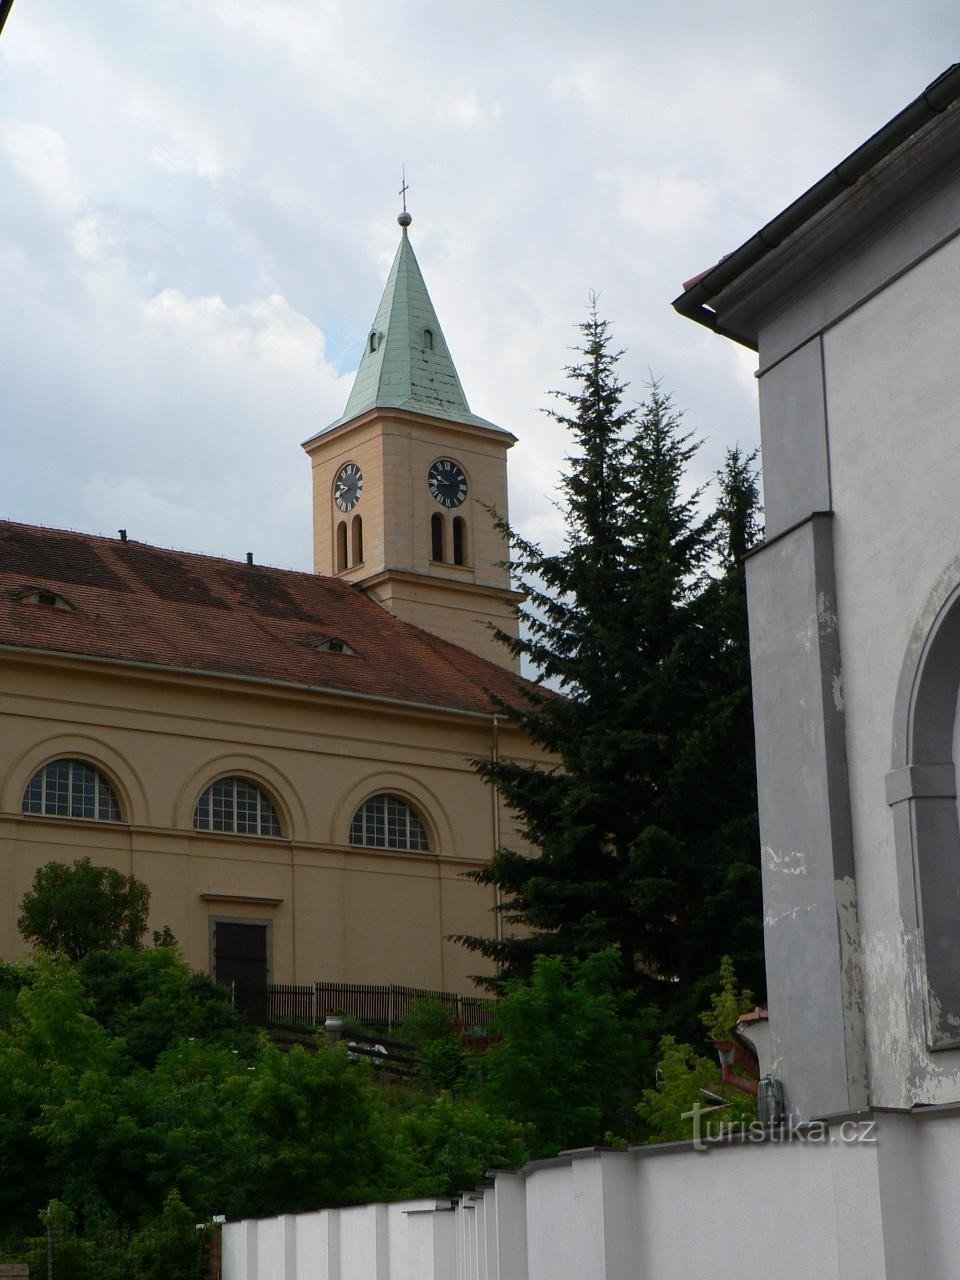 Stod, church of St. Mary Magdalene from Radbuza